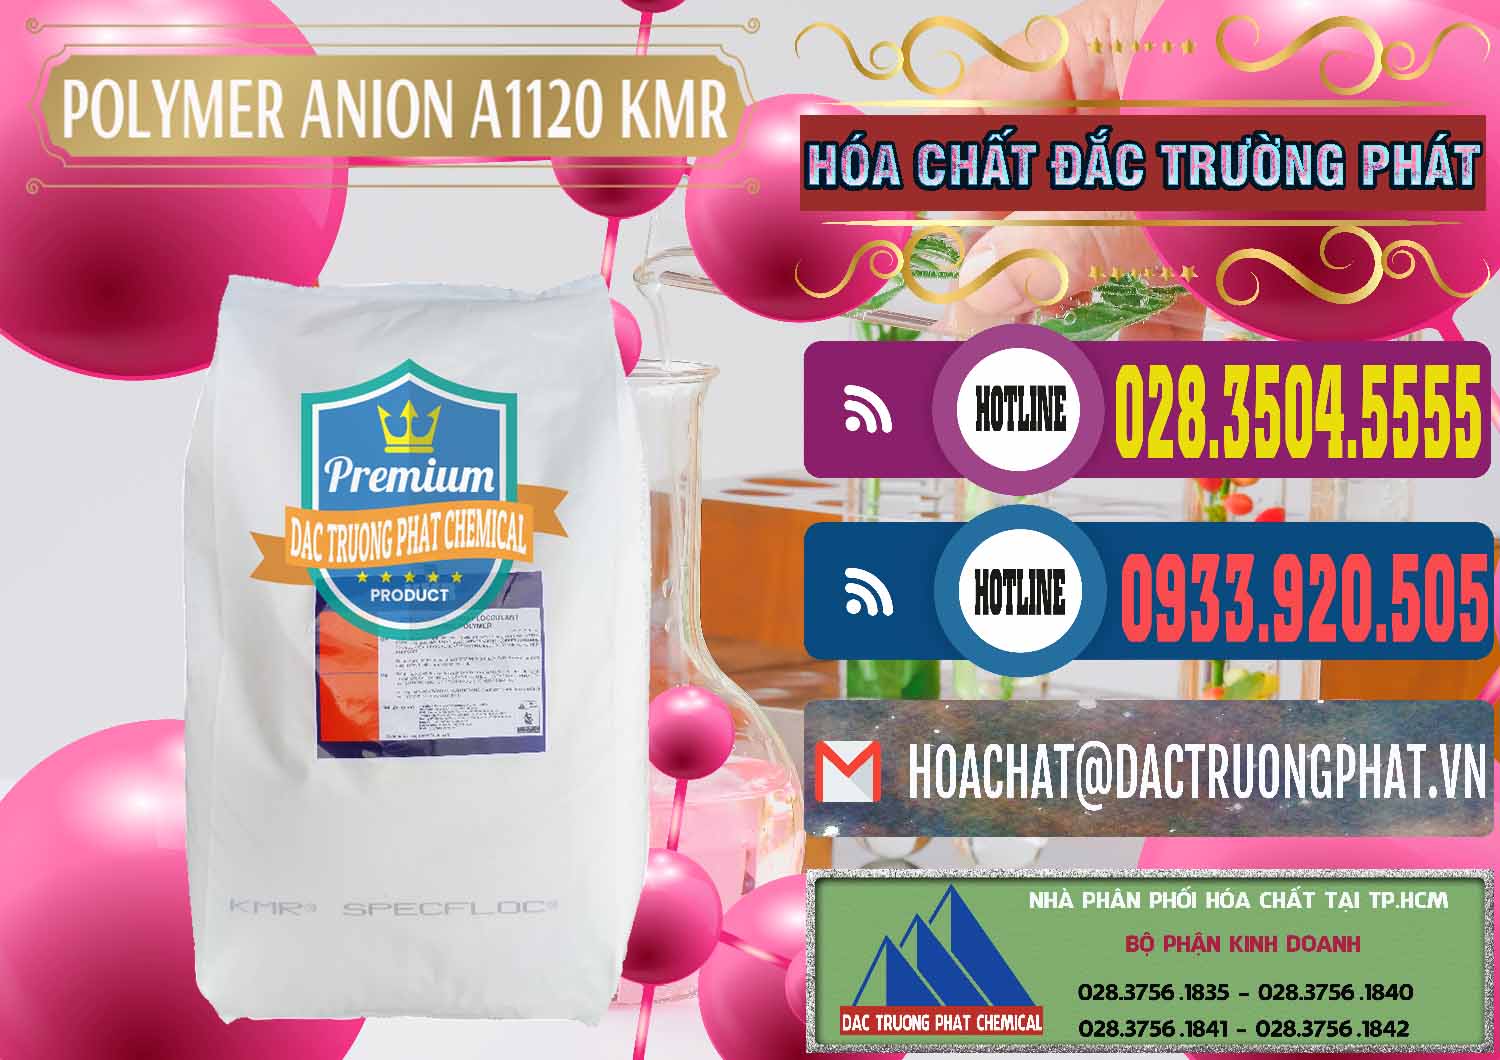 Nơi bán ( phân phối ) Polymer Anion A1120 - KMR Anh Quốc England - 0119 - Công ty nhập khẩu và phân phối hóa chất tại TP.HCM - muabanhoachat.com.vn